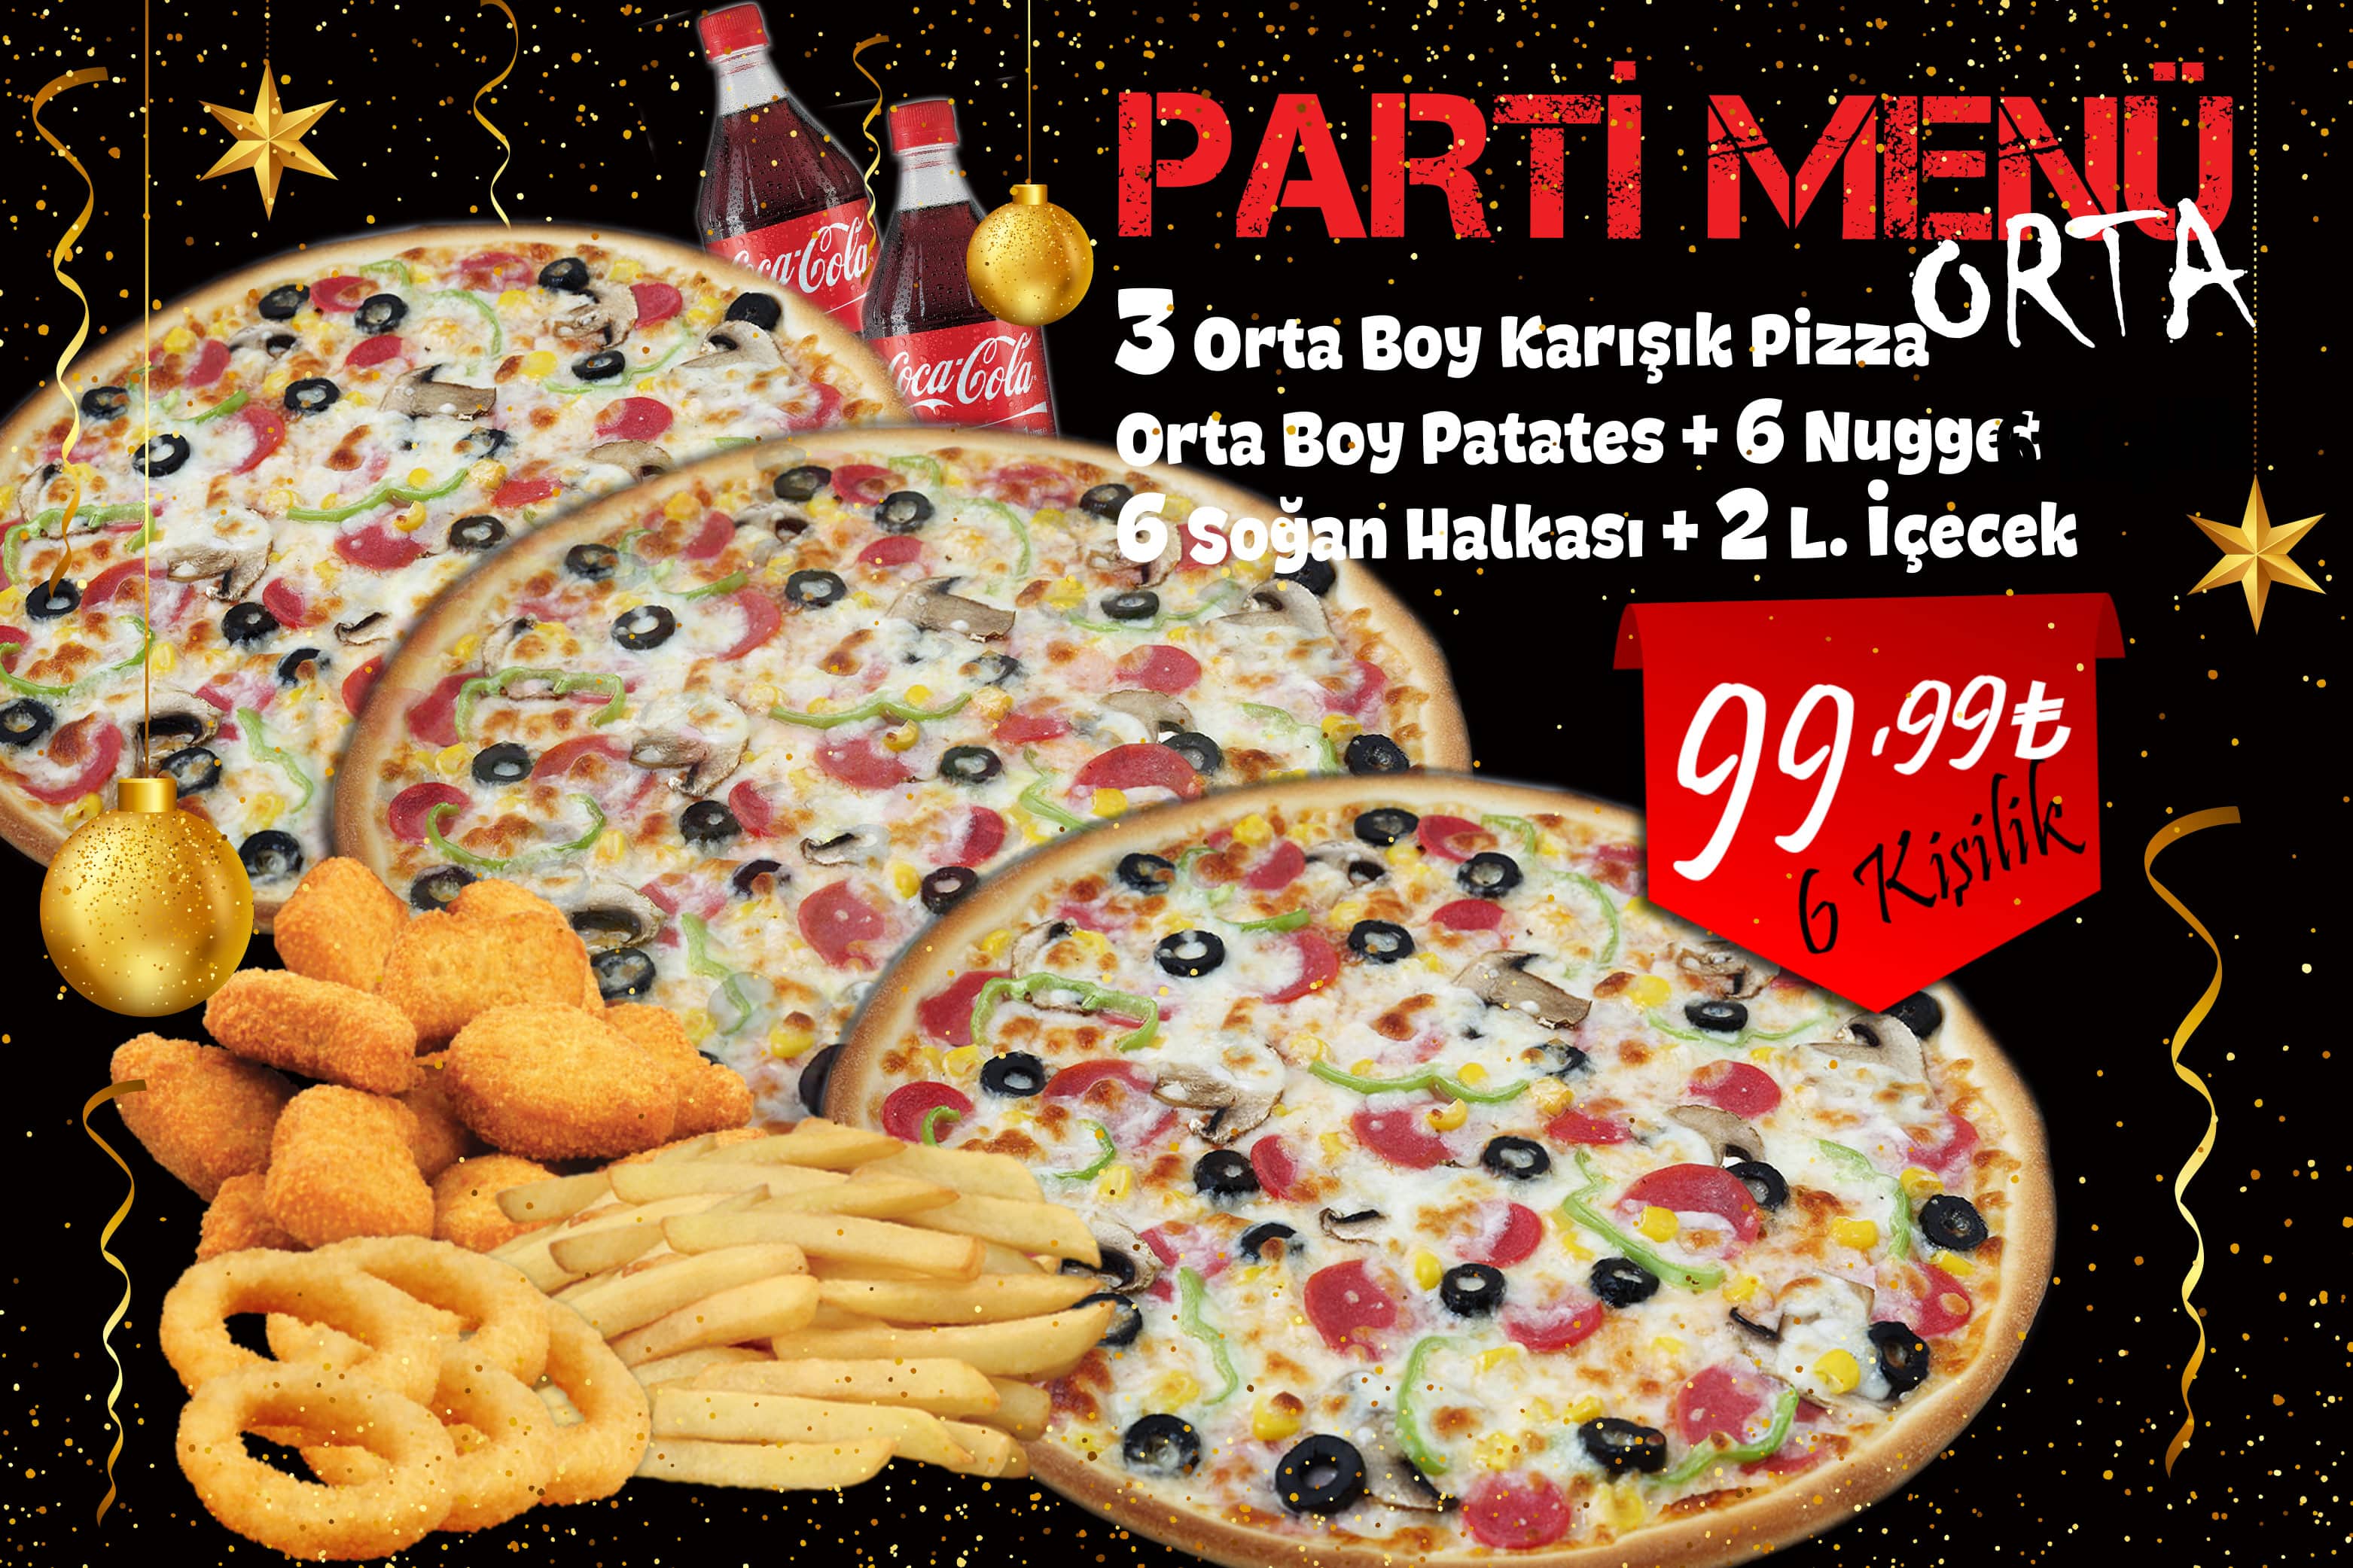 Pizza Taxi Türkiye Parti Menü (Orta) 99.99₺